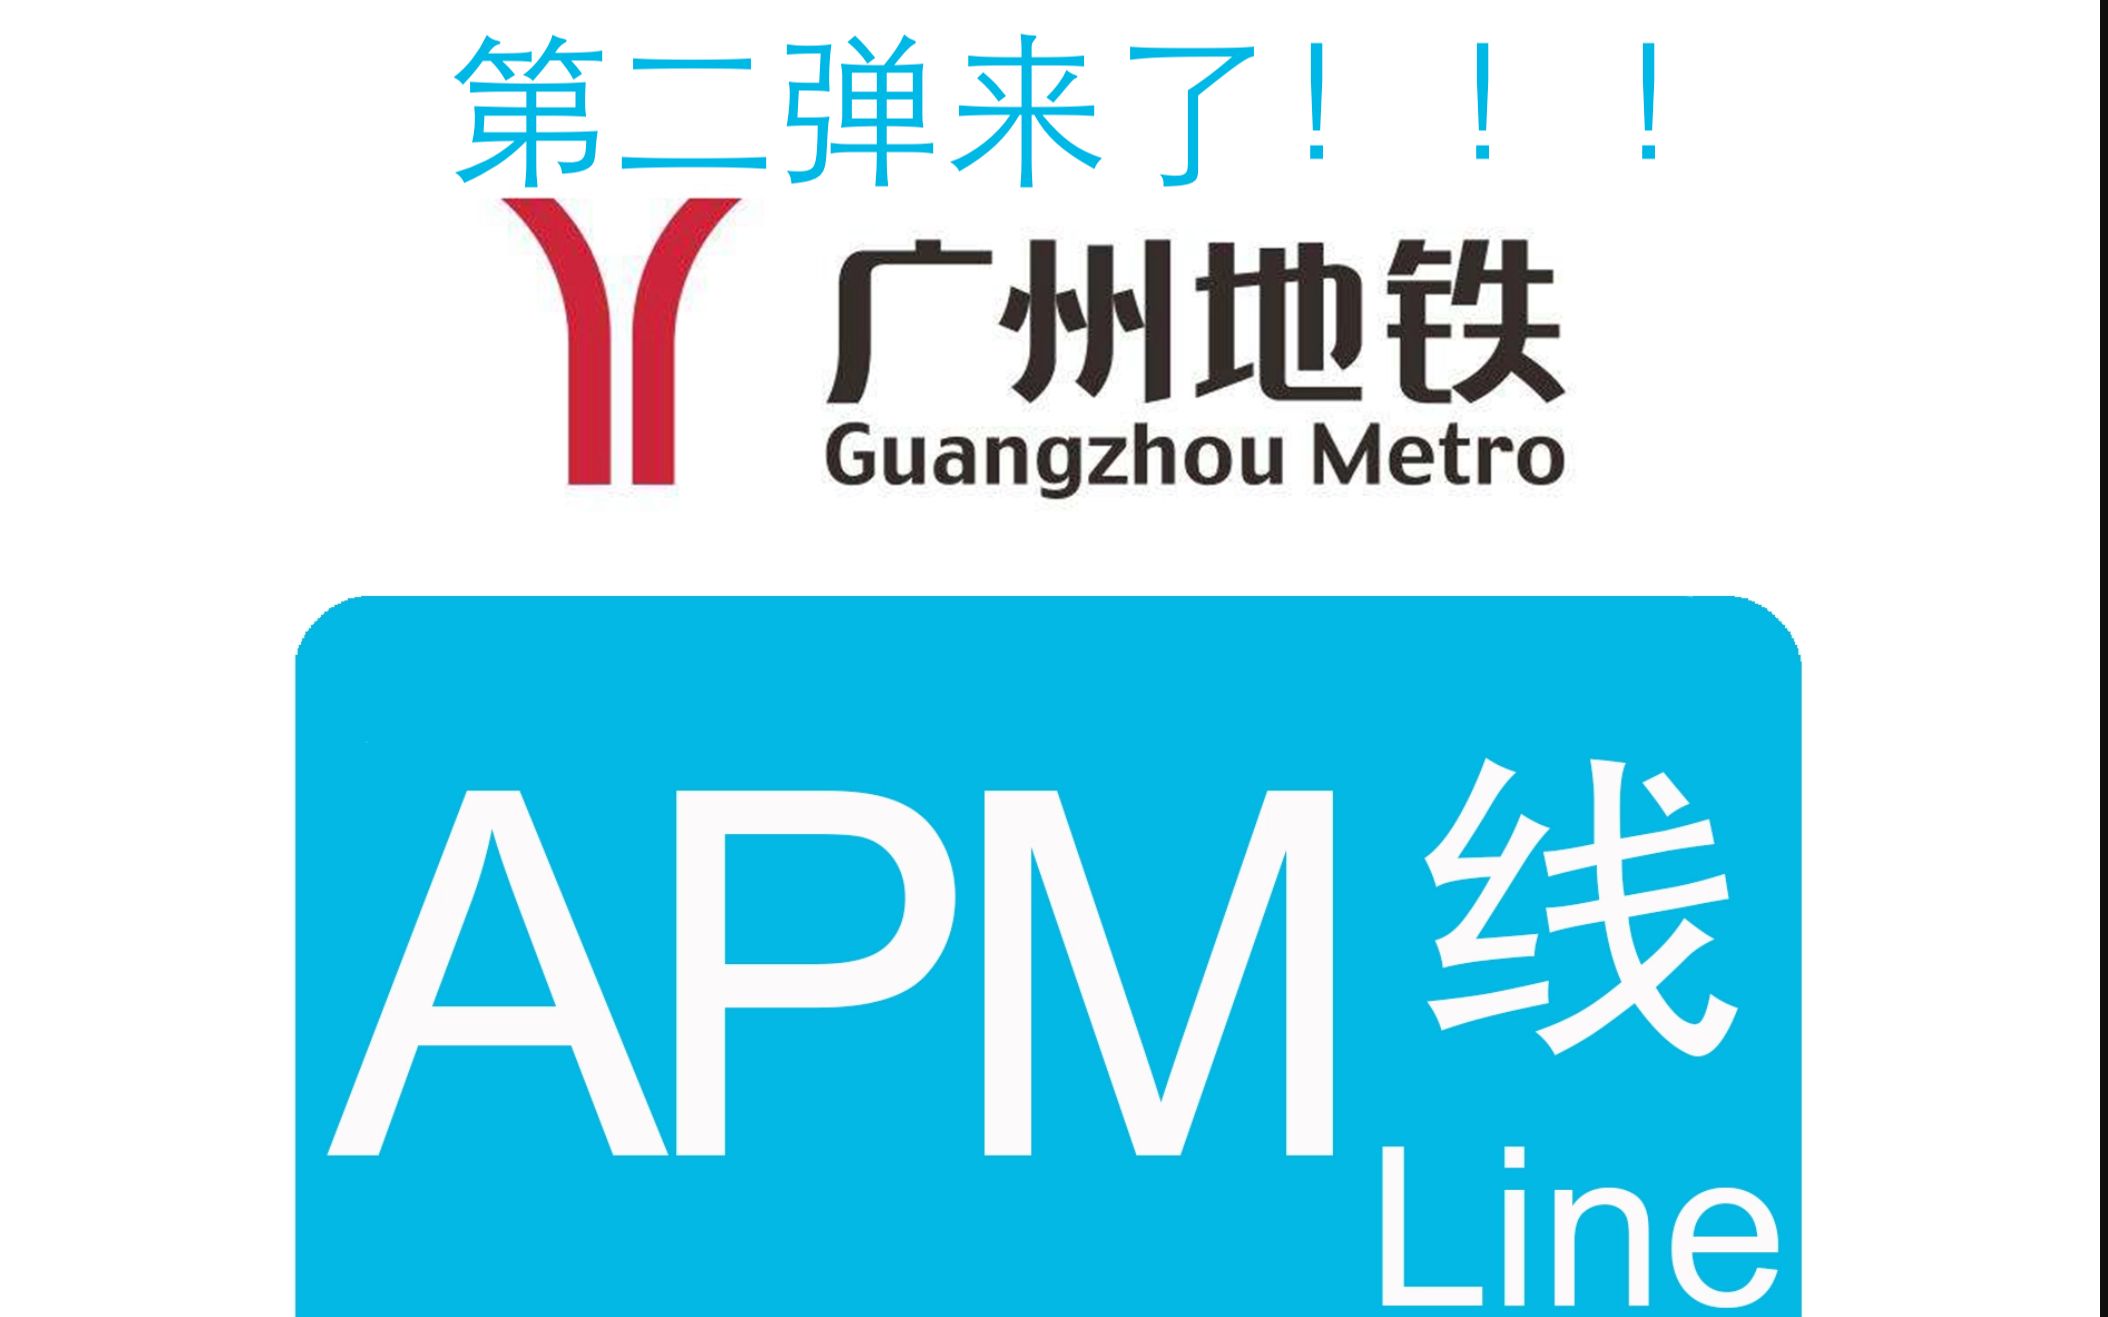 把广州地铁apm线各站点翻译20次会如何?